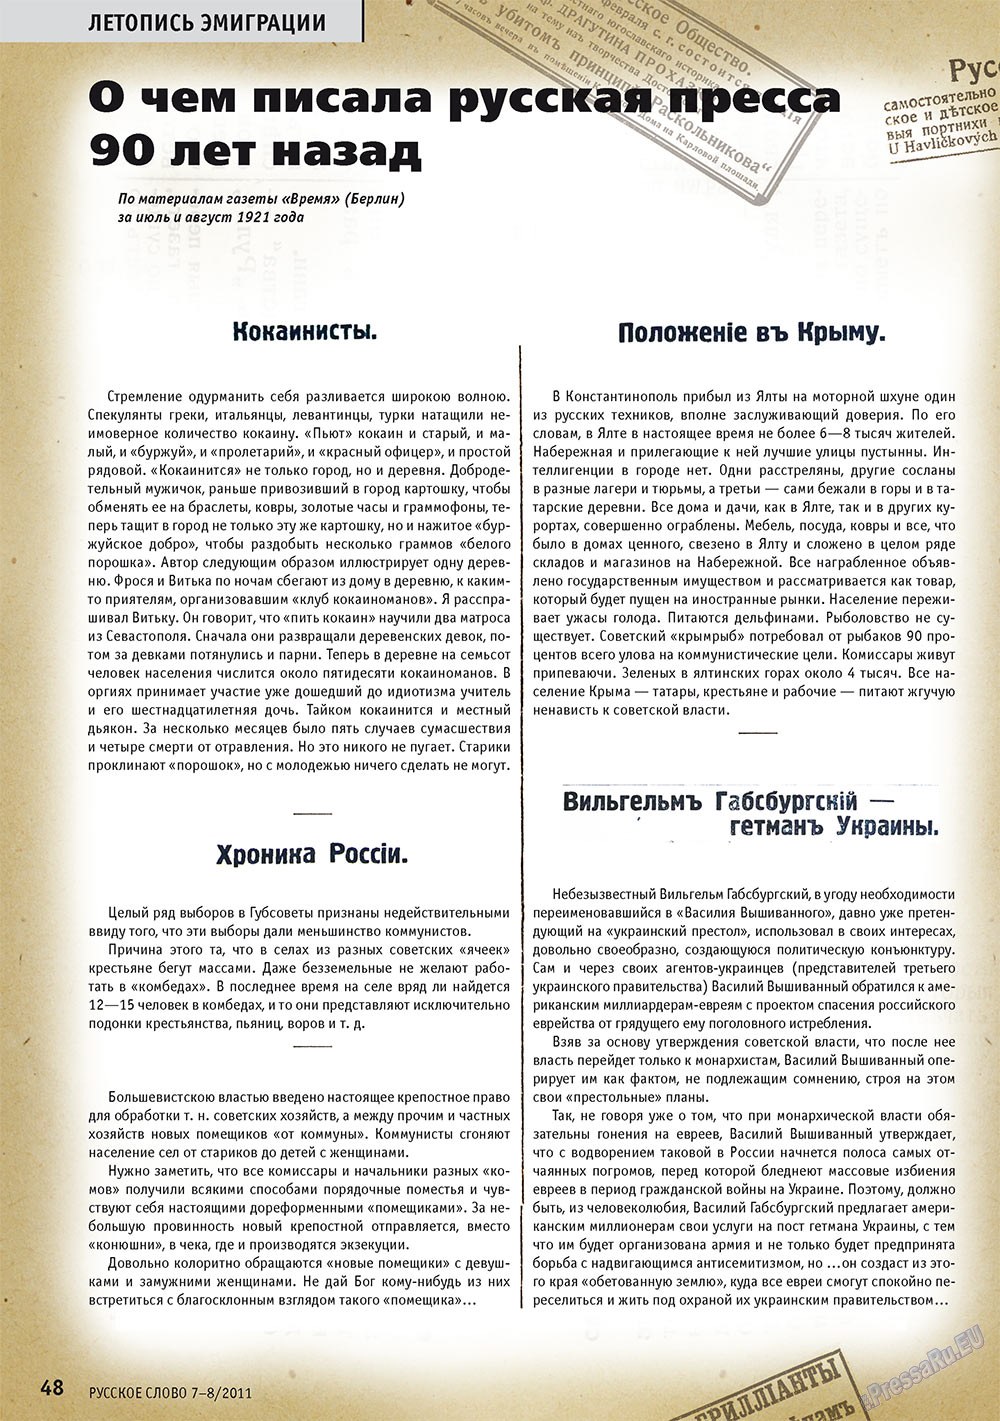 Русское слово, журнал. 2011 №7 стр.50